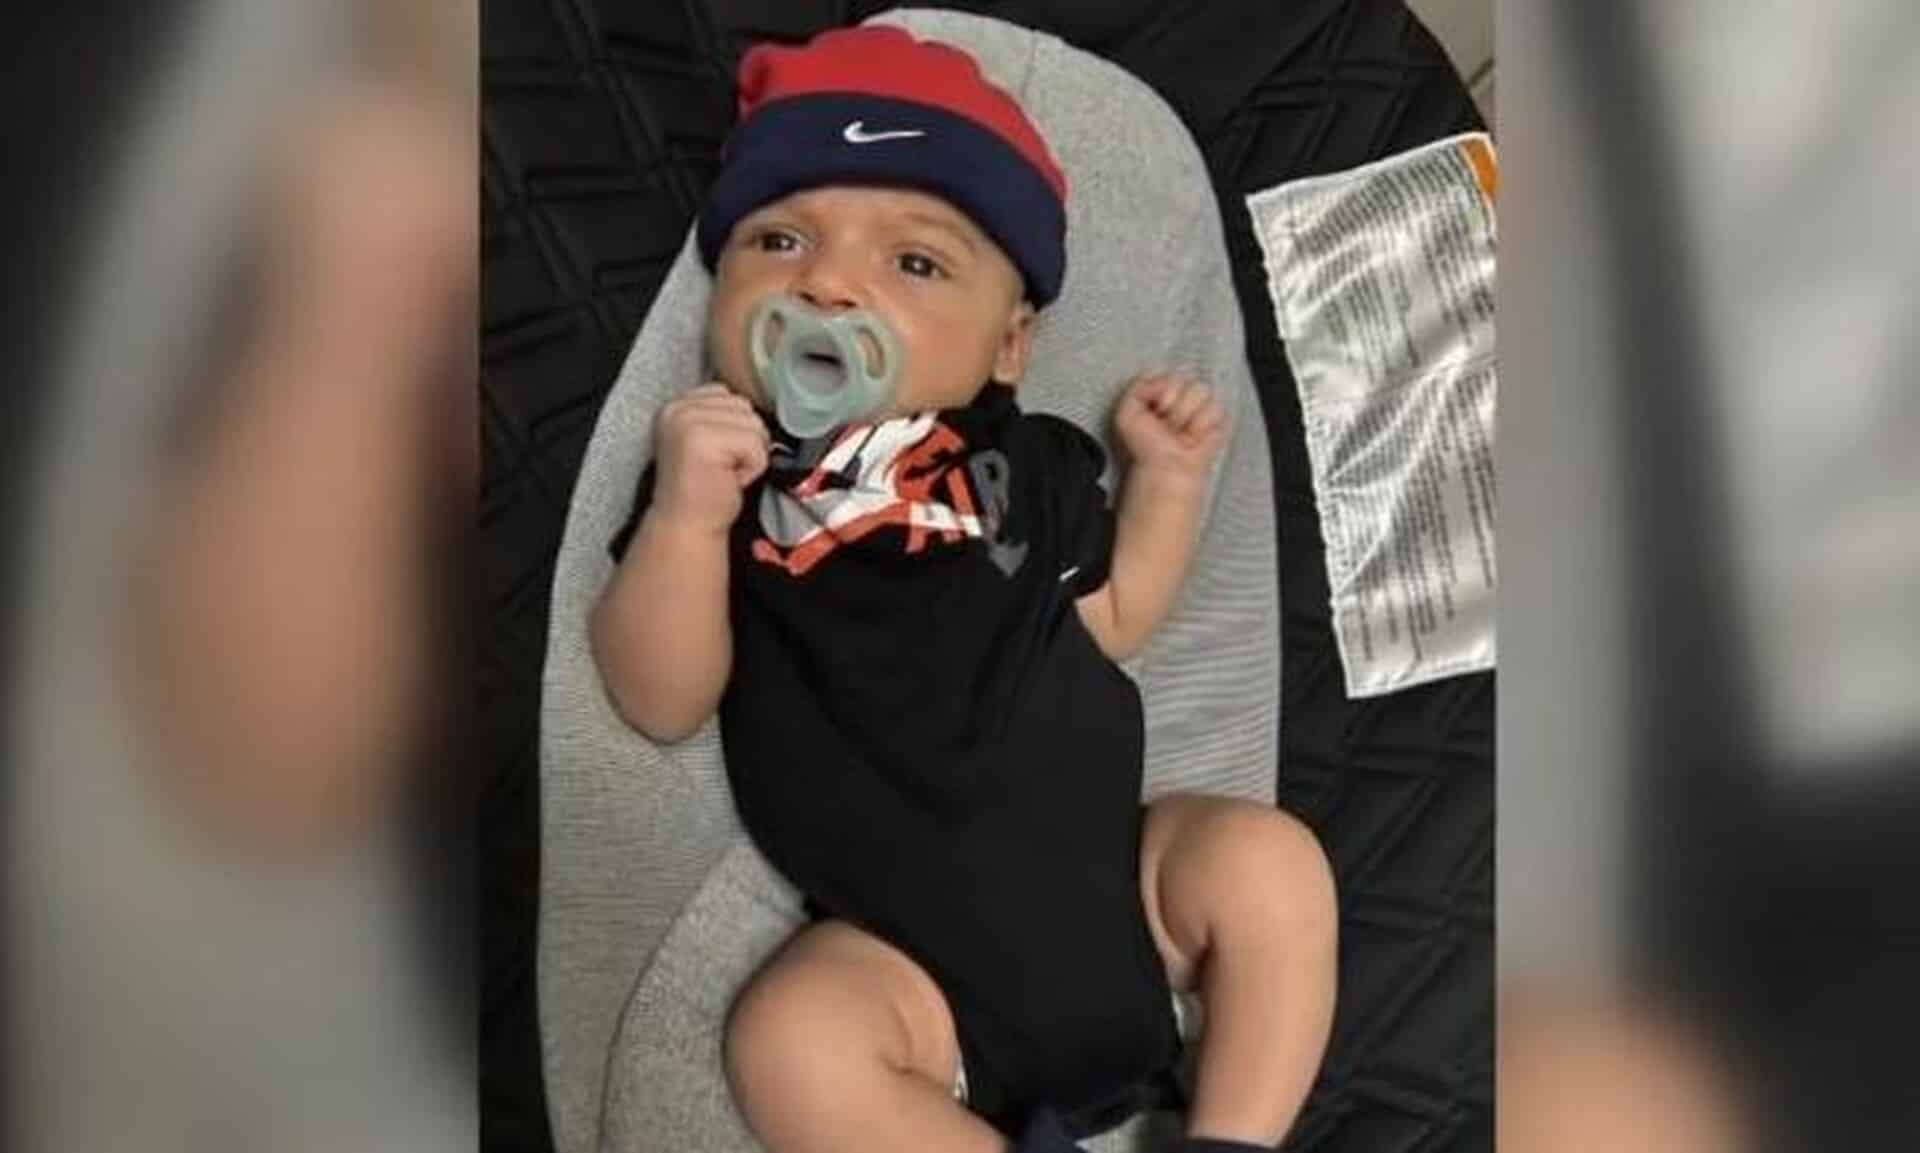 ΗΠΑ: Μωρό 6 εβδομάδων κατακρεουργήθηκε μέχρι θανάτου από το χάσκι της οικογένειας ενώ κοιμόταν στην κούνια του